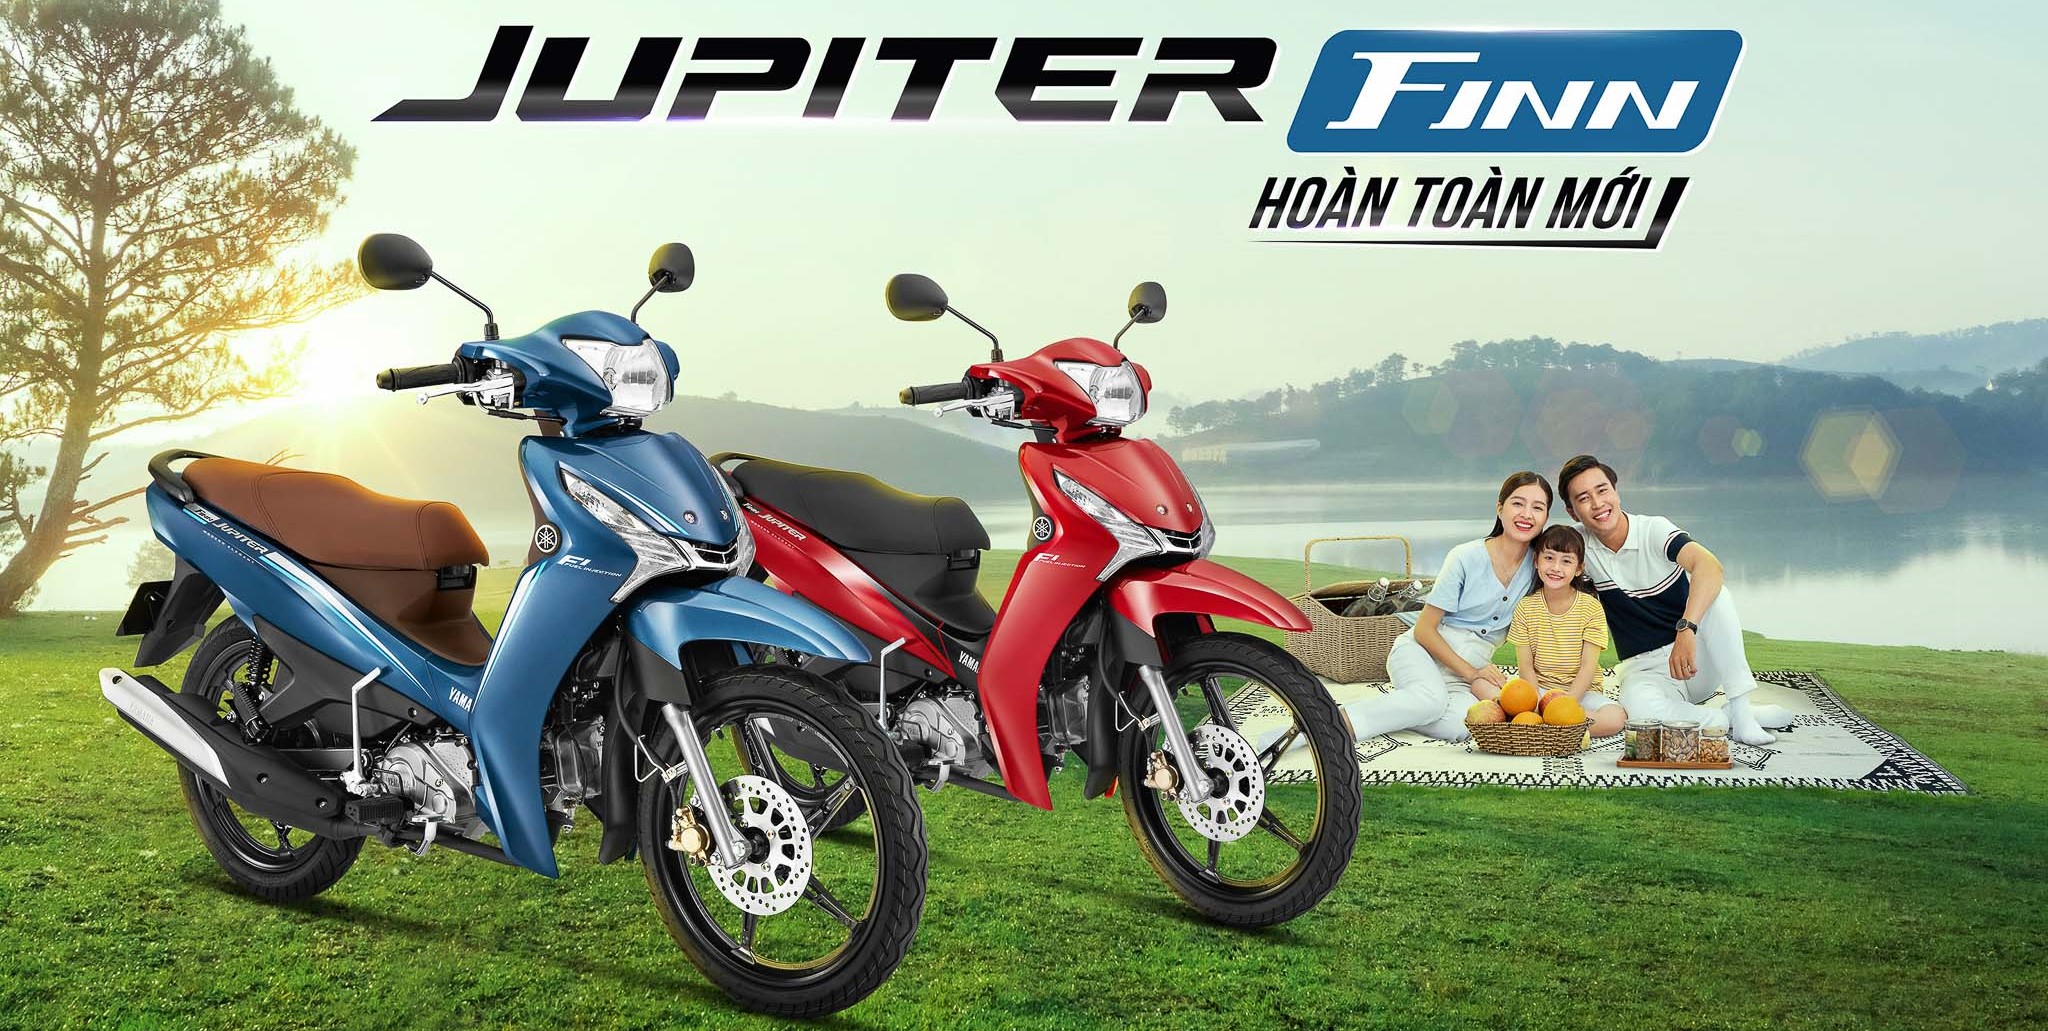 mua Yamaha Jupiter Finn chính hãng